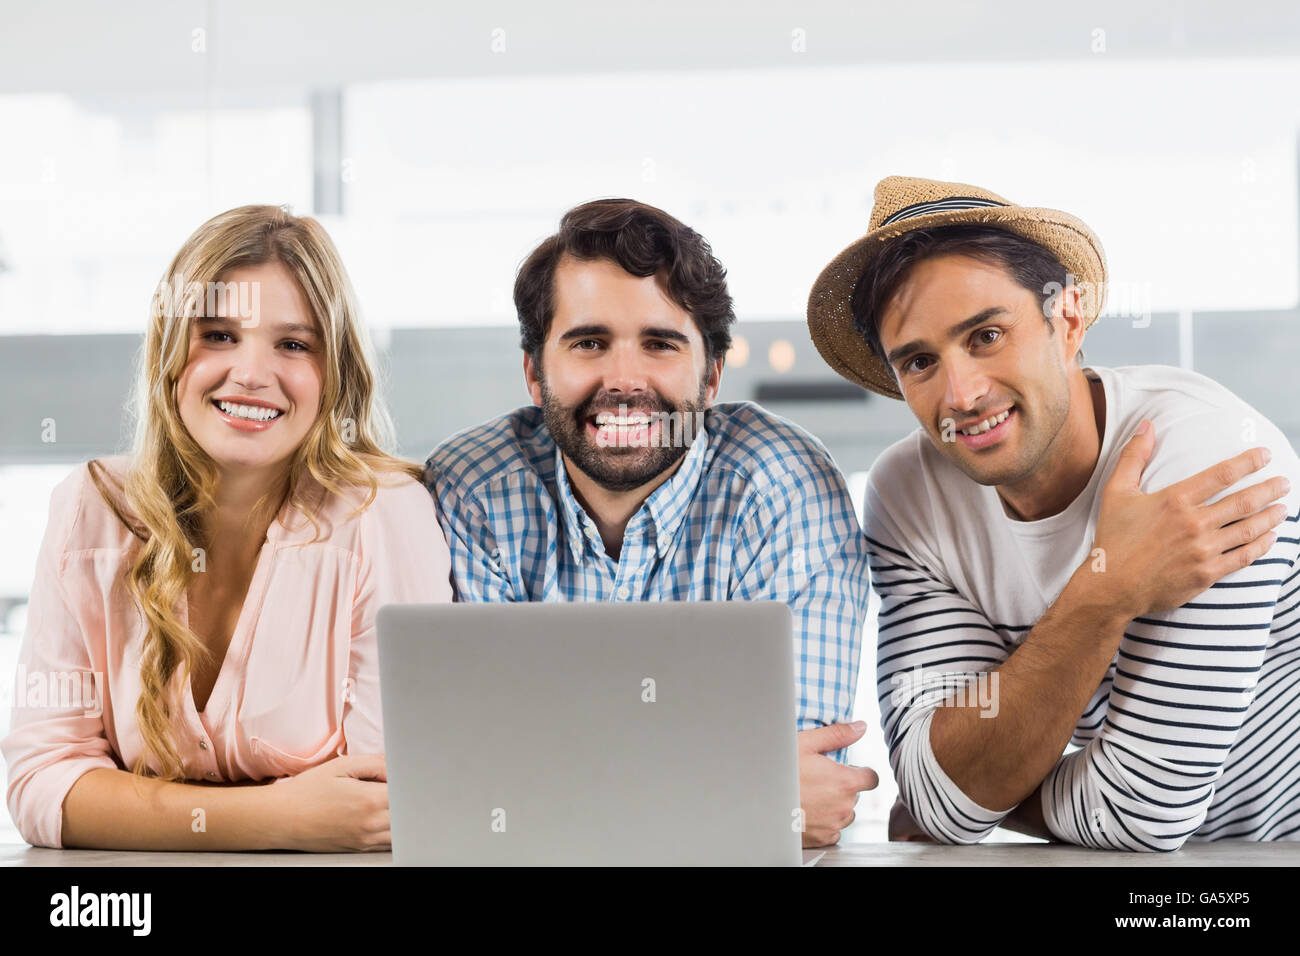 Portrait of smiling woman et deux hommes using laptop Banque D'Images